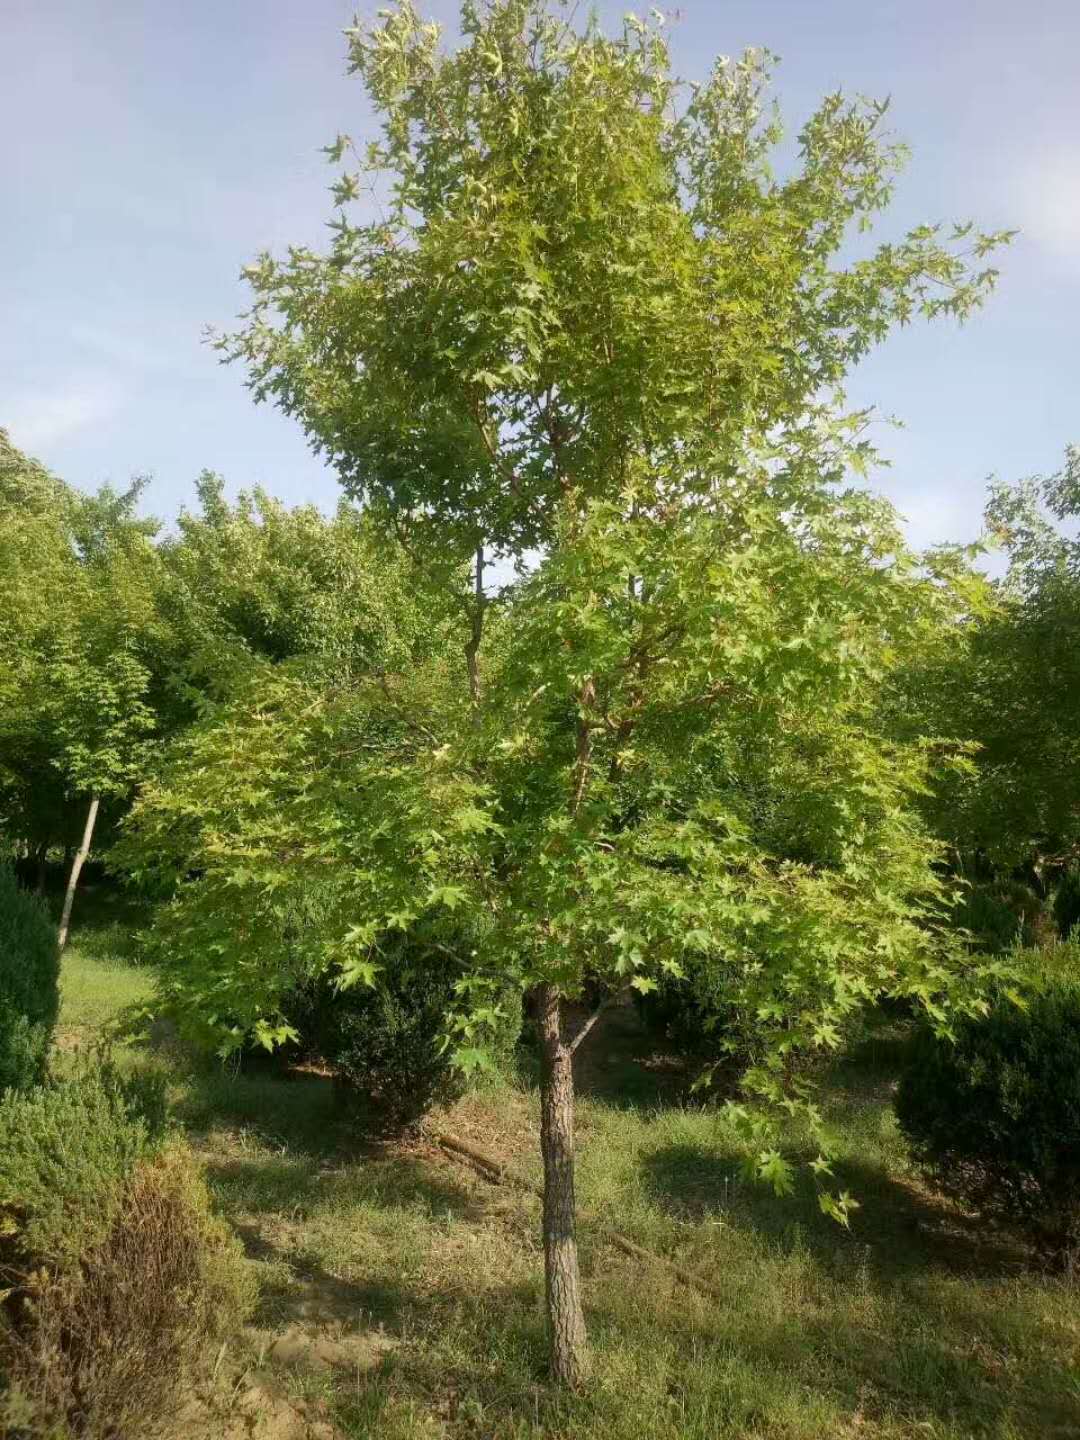 五角楓苗木從播種到培育成長的過程